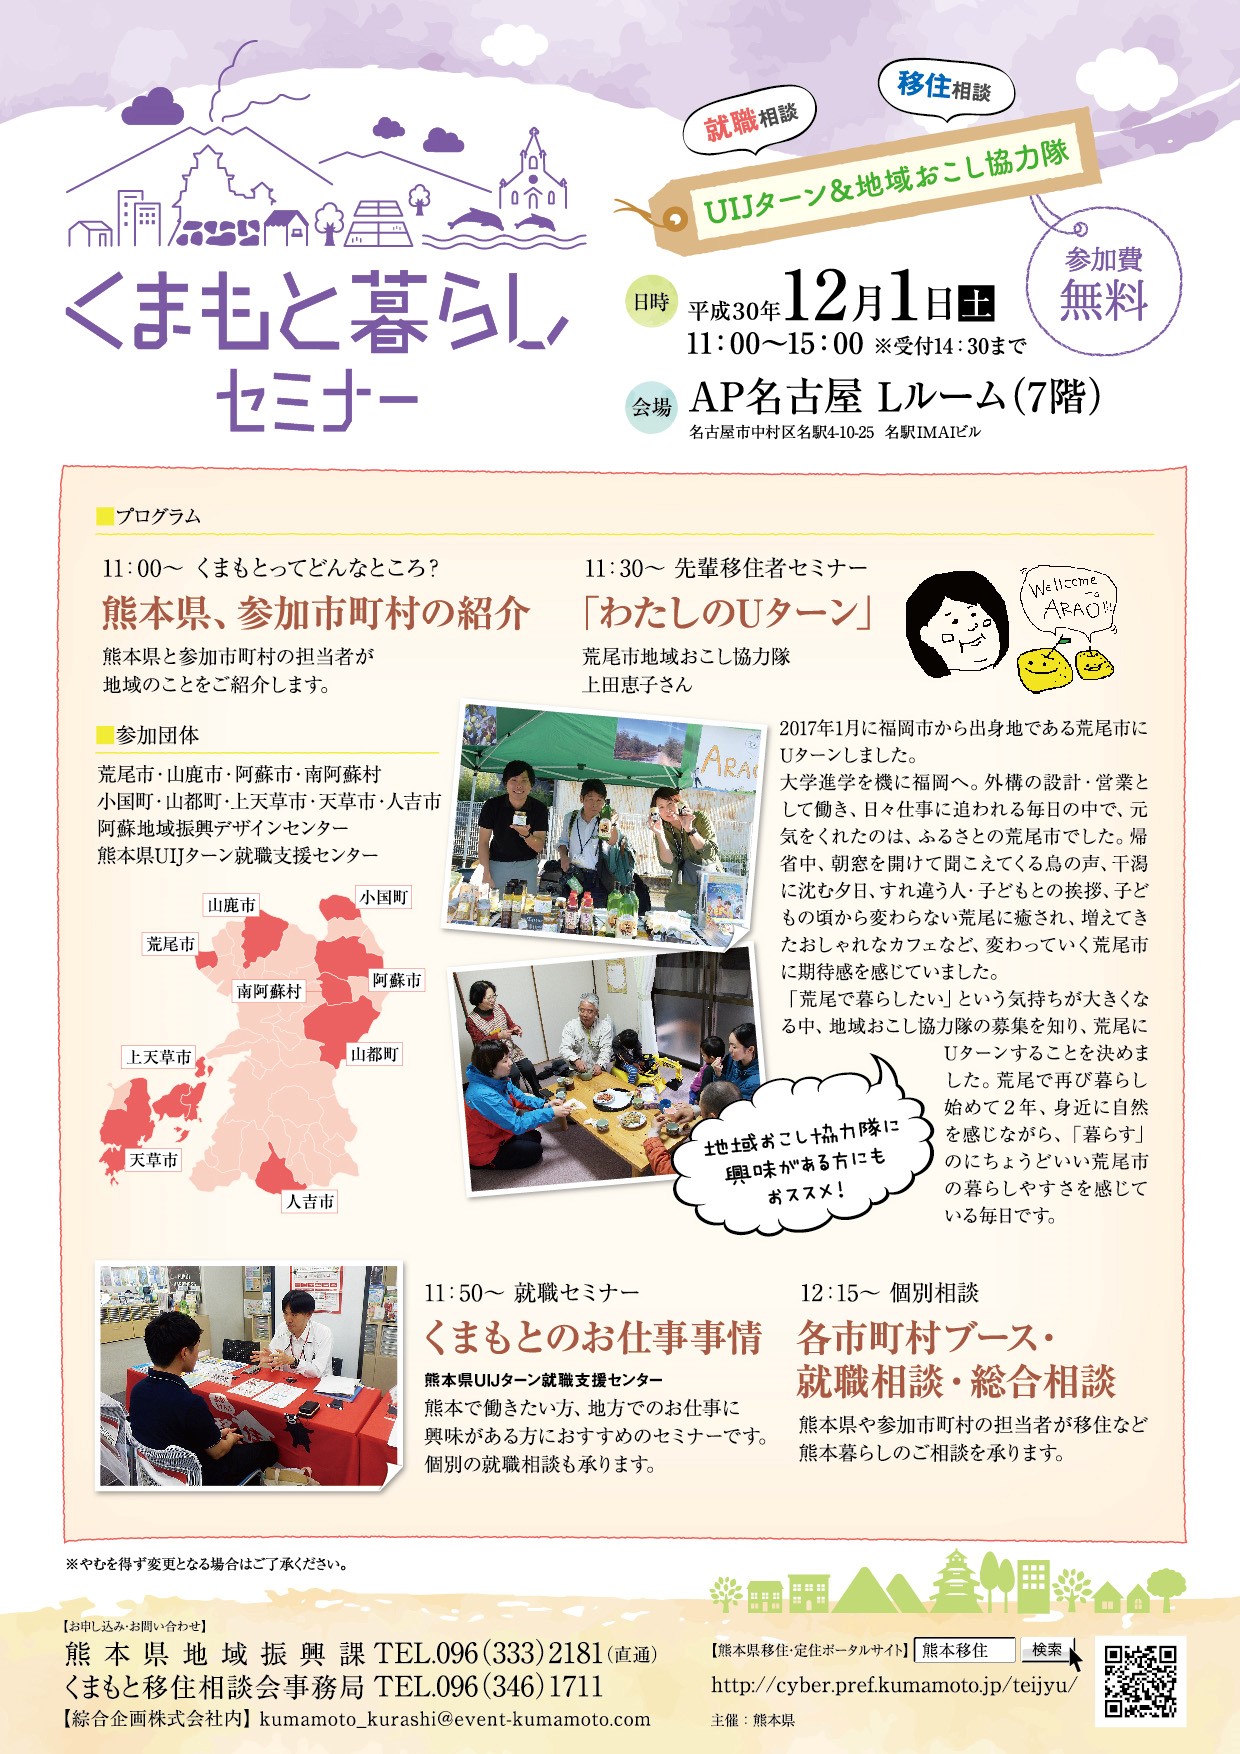 【名古屋】くまもと暮らしセミナー ～UIJターン＆地域おこし協力隊～ | 移住関連イベント情報